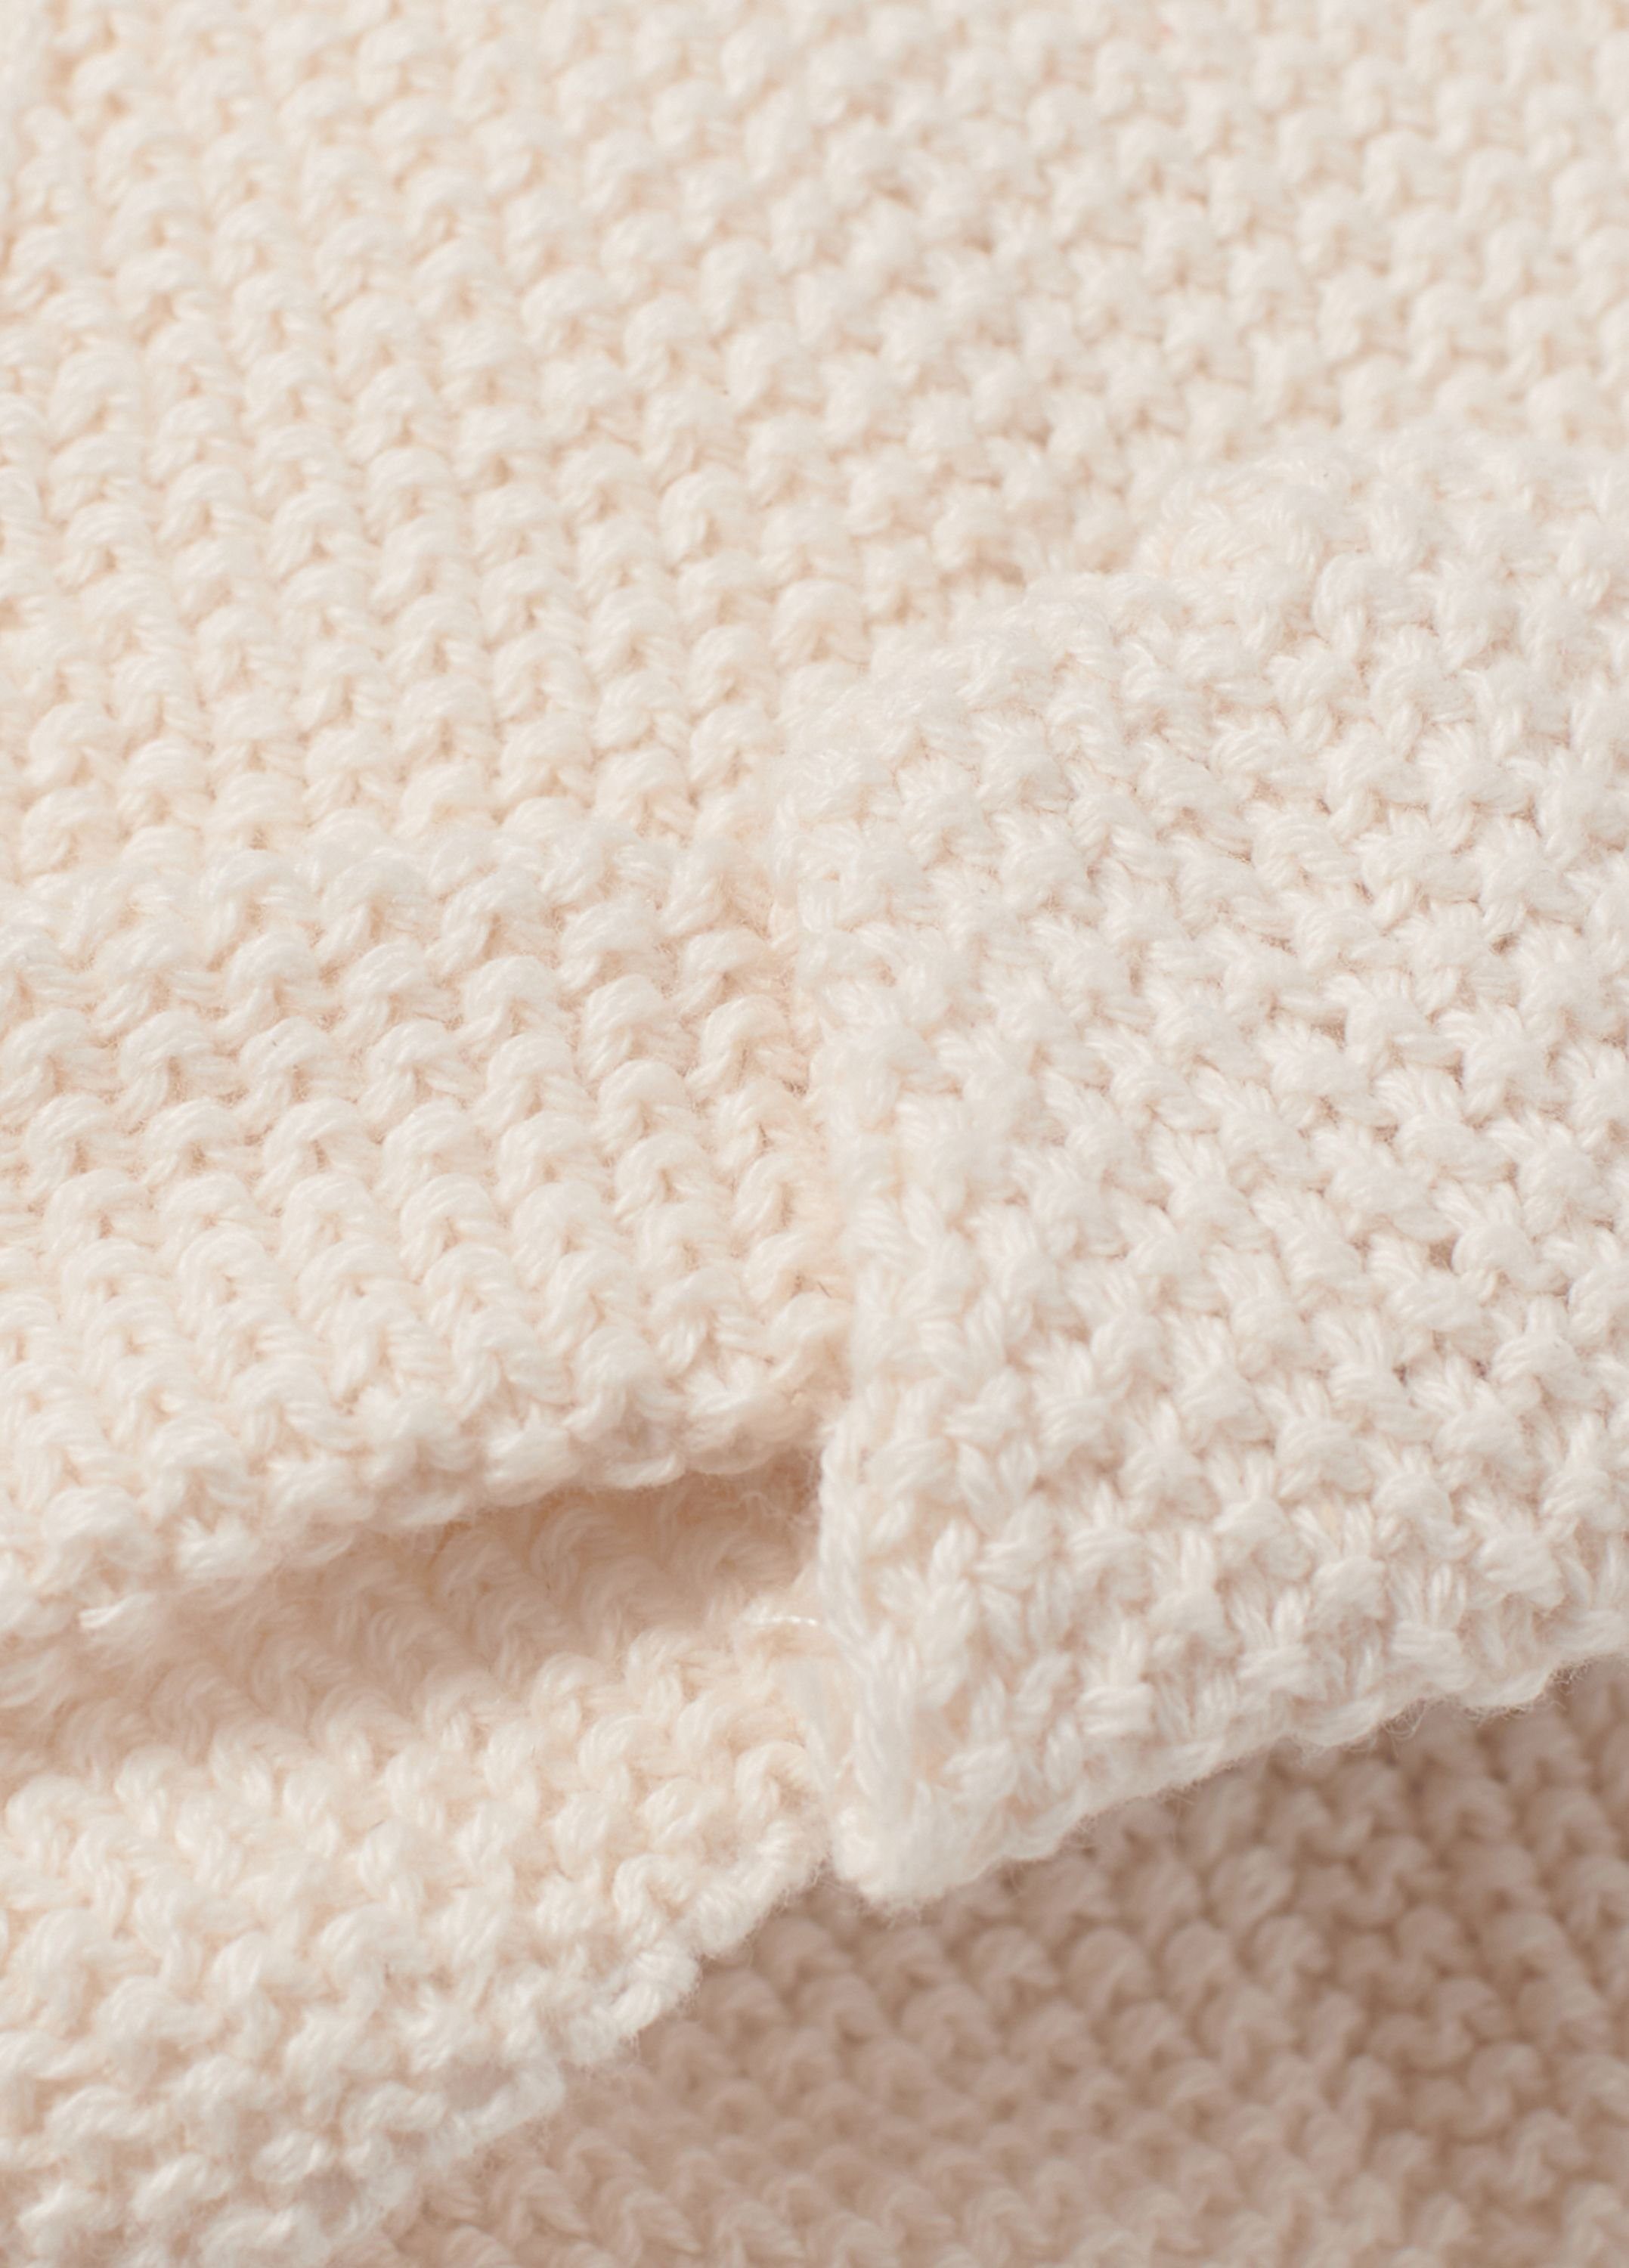 Nordic Coast Company Geburt - ab Baumwolle Mädchen Strickmütze Natur Baby Turban als Geschenk Weiß 100% Neugeborene Turbanmütze ideal für